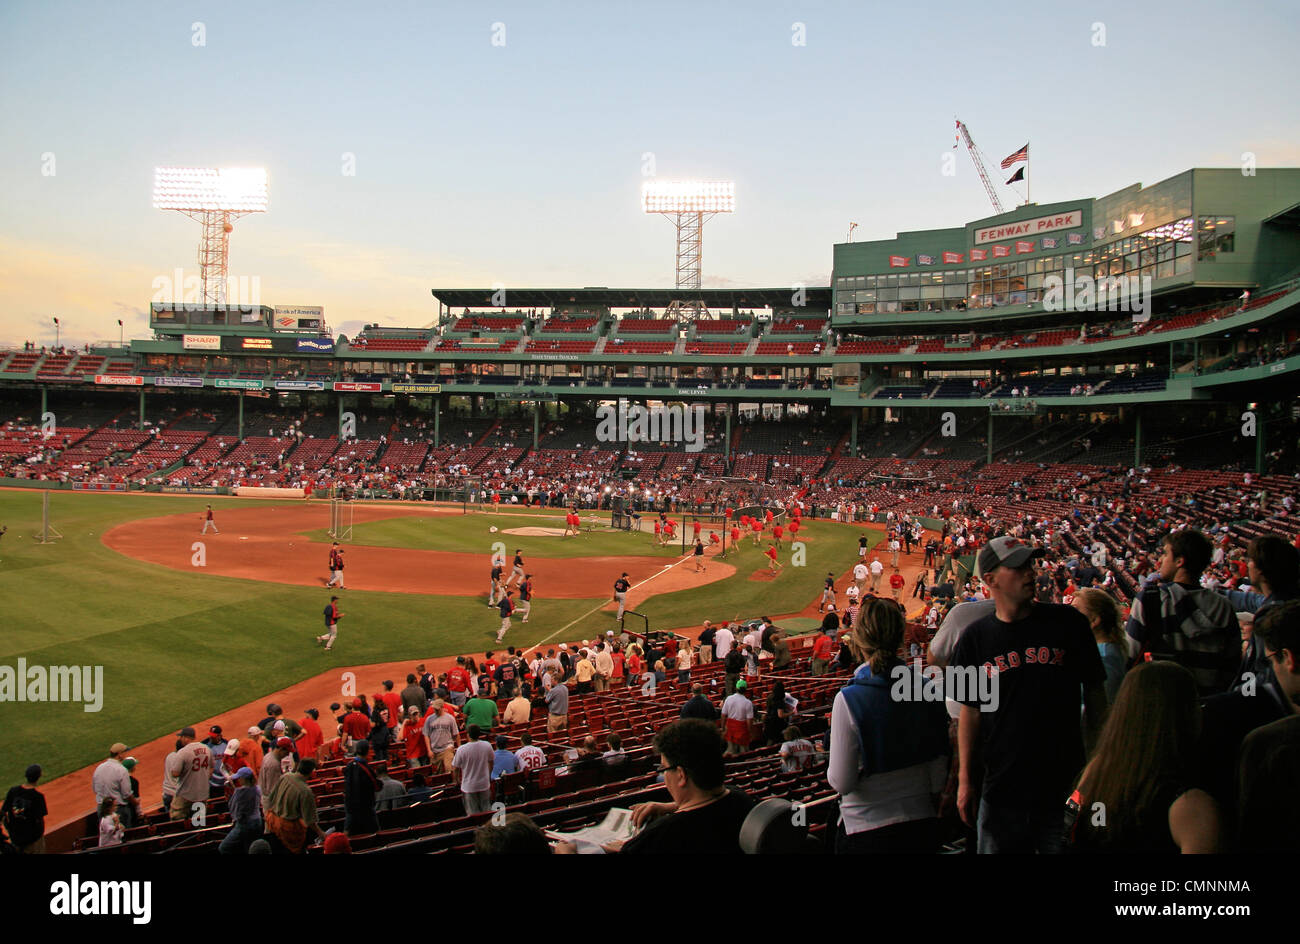 Il Fenway Park, casa dei Boston Red Sox Major League Baseball team in Boston, Massachusetts, Stati Uniti. Foto Stock